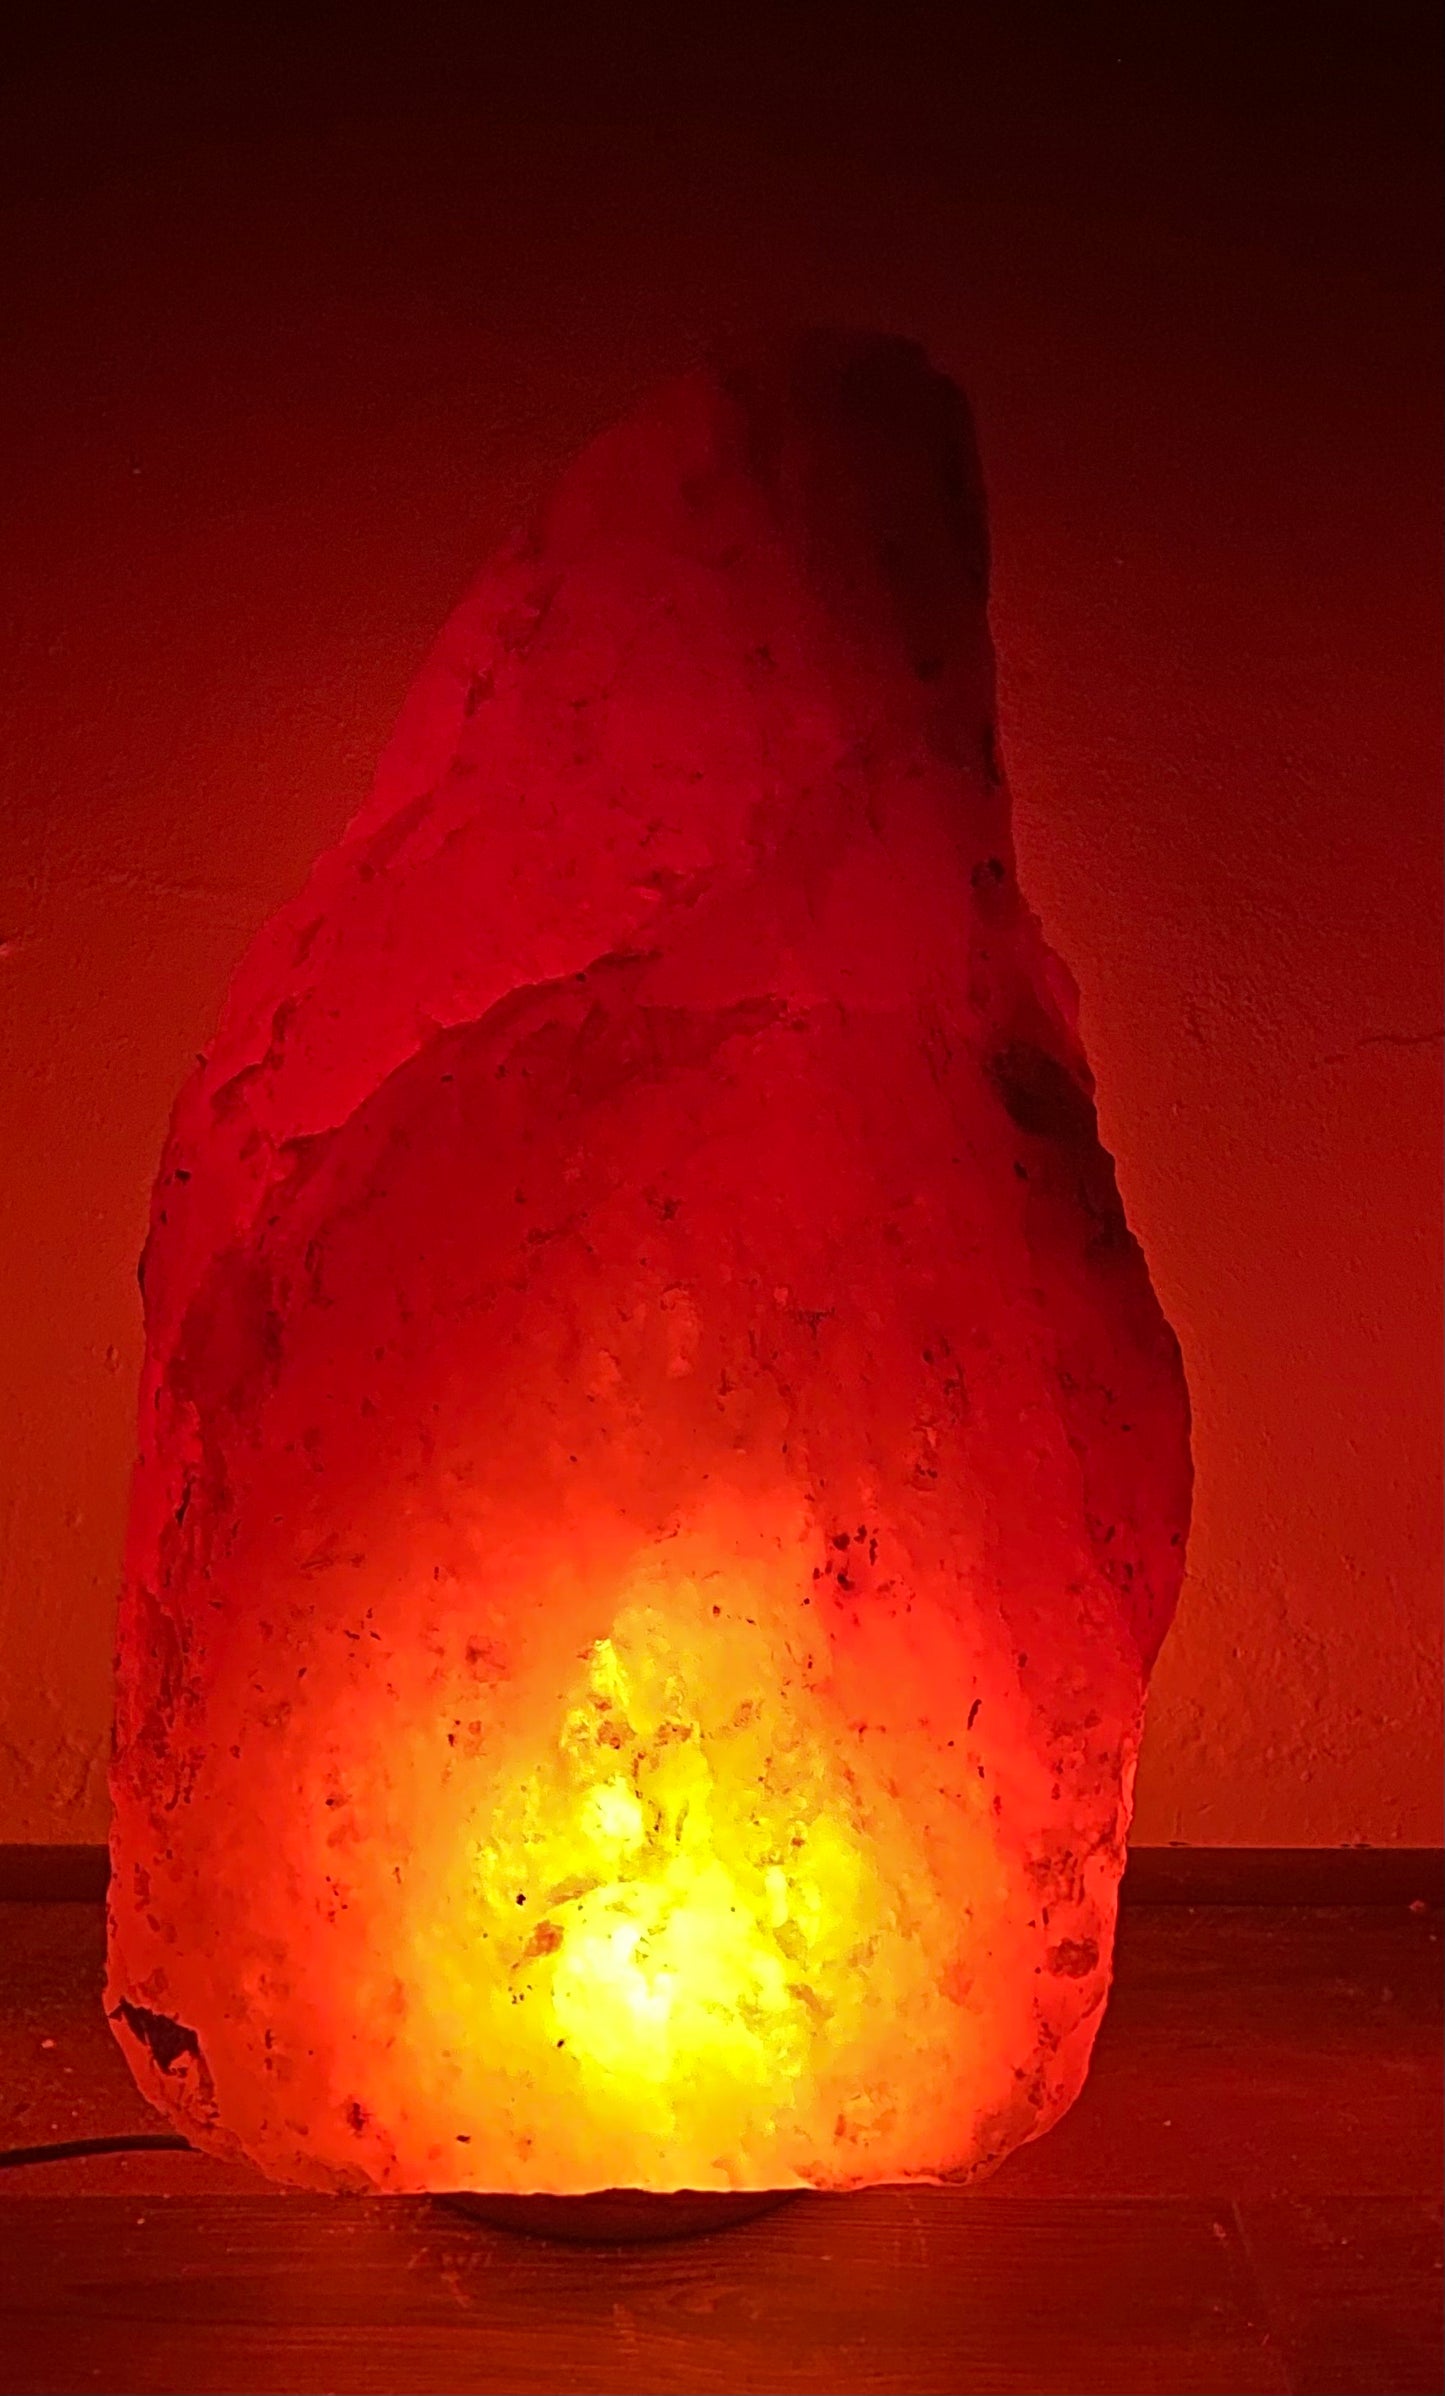 XXL Himalayan Salt Lamp 96kg